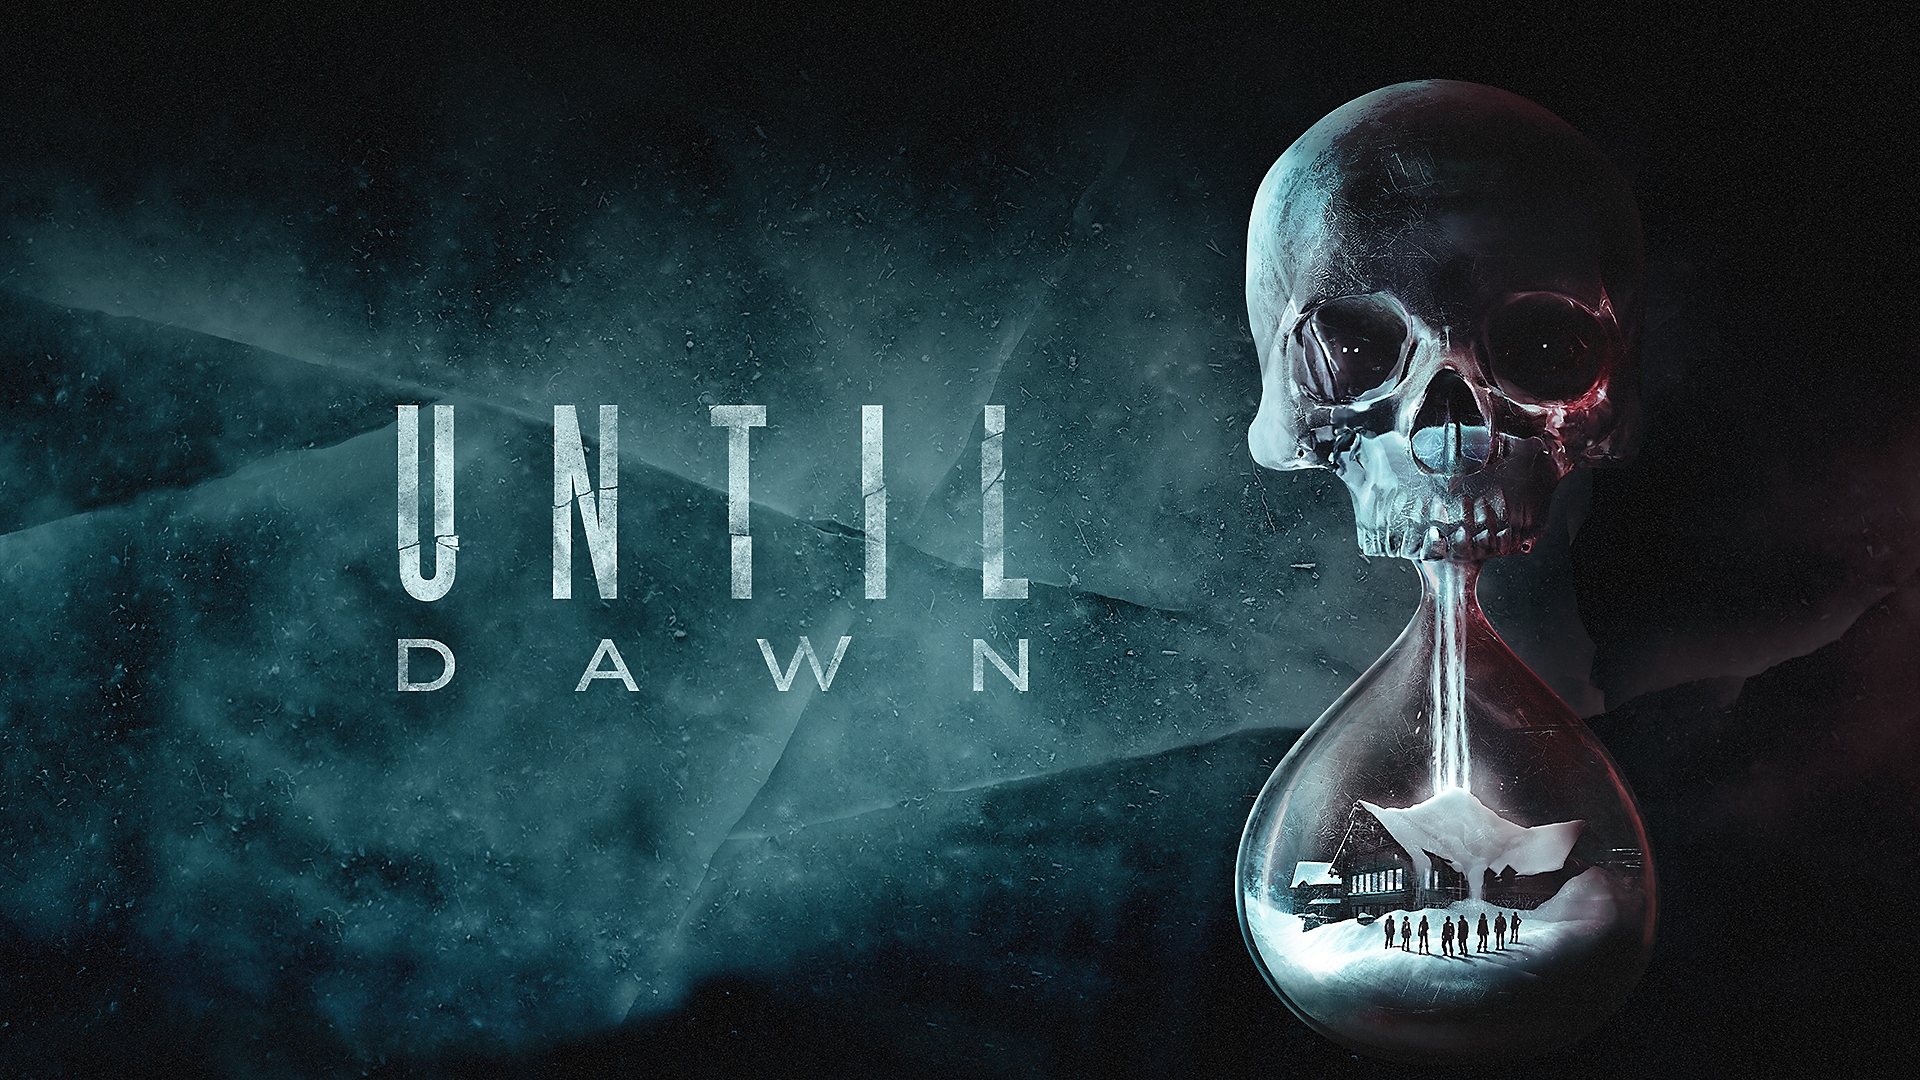 Until Dawn - trejler za objavu | PS4, Rami Malek, Hayden Panettiere